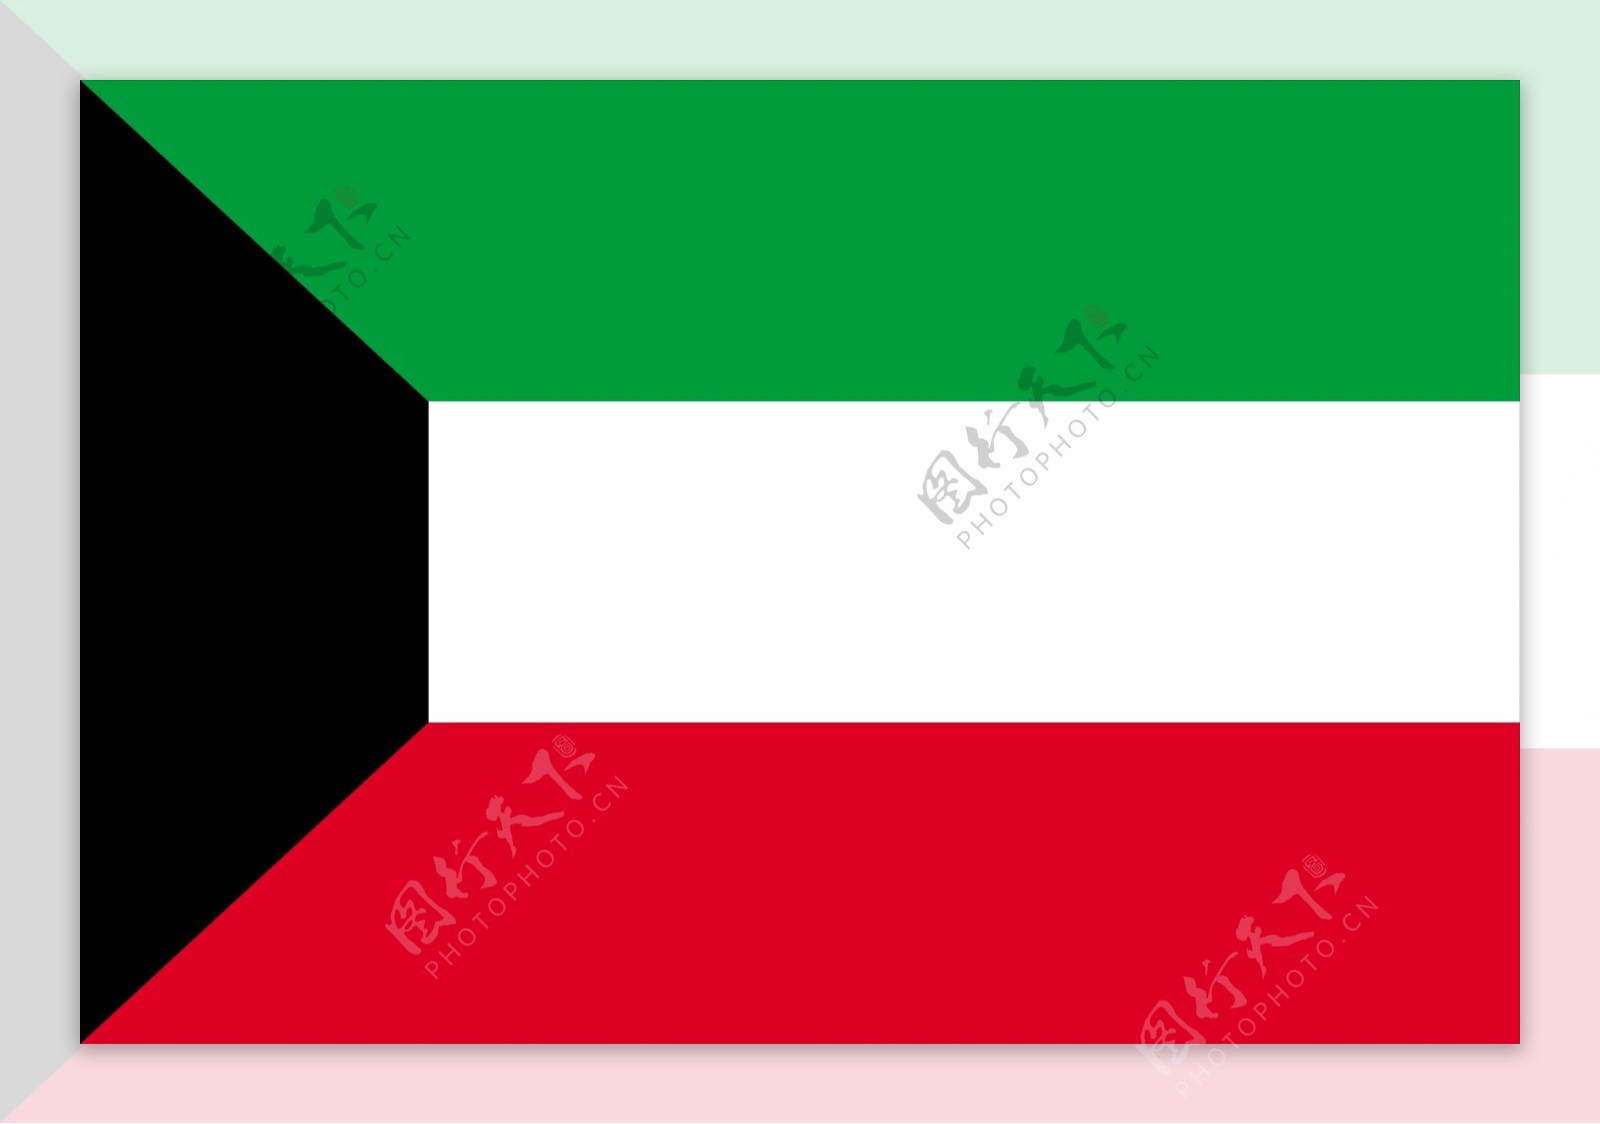 科威特国旗图片